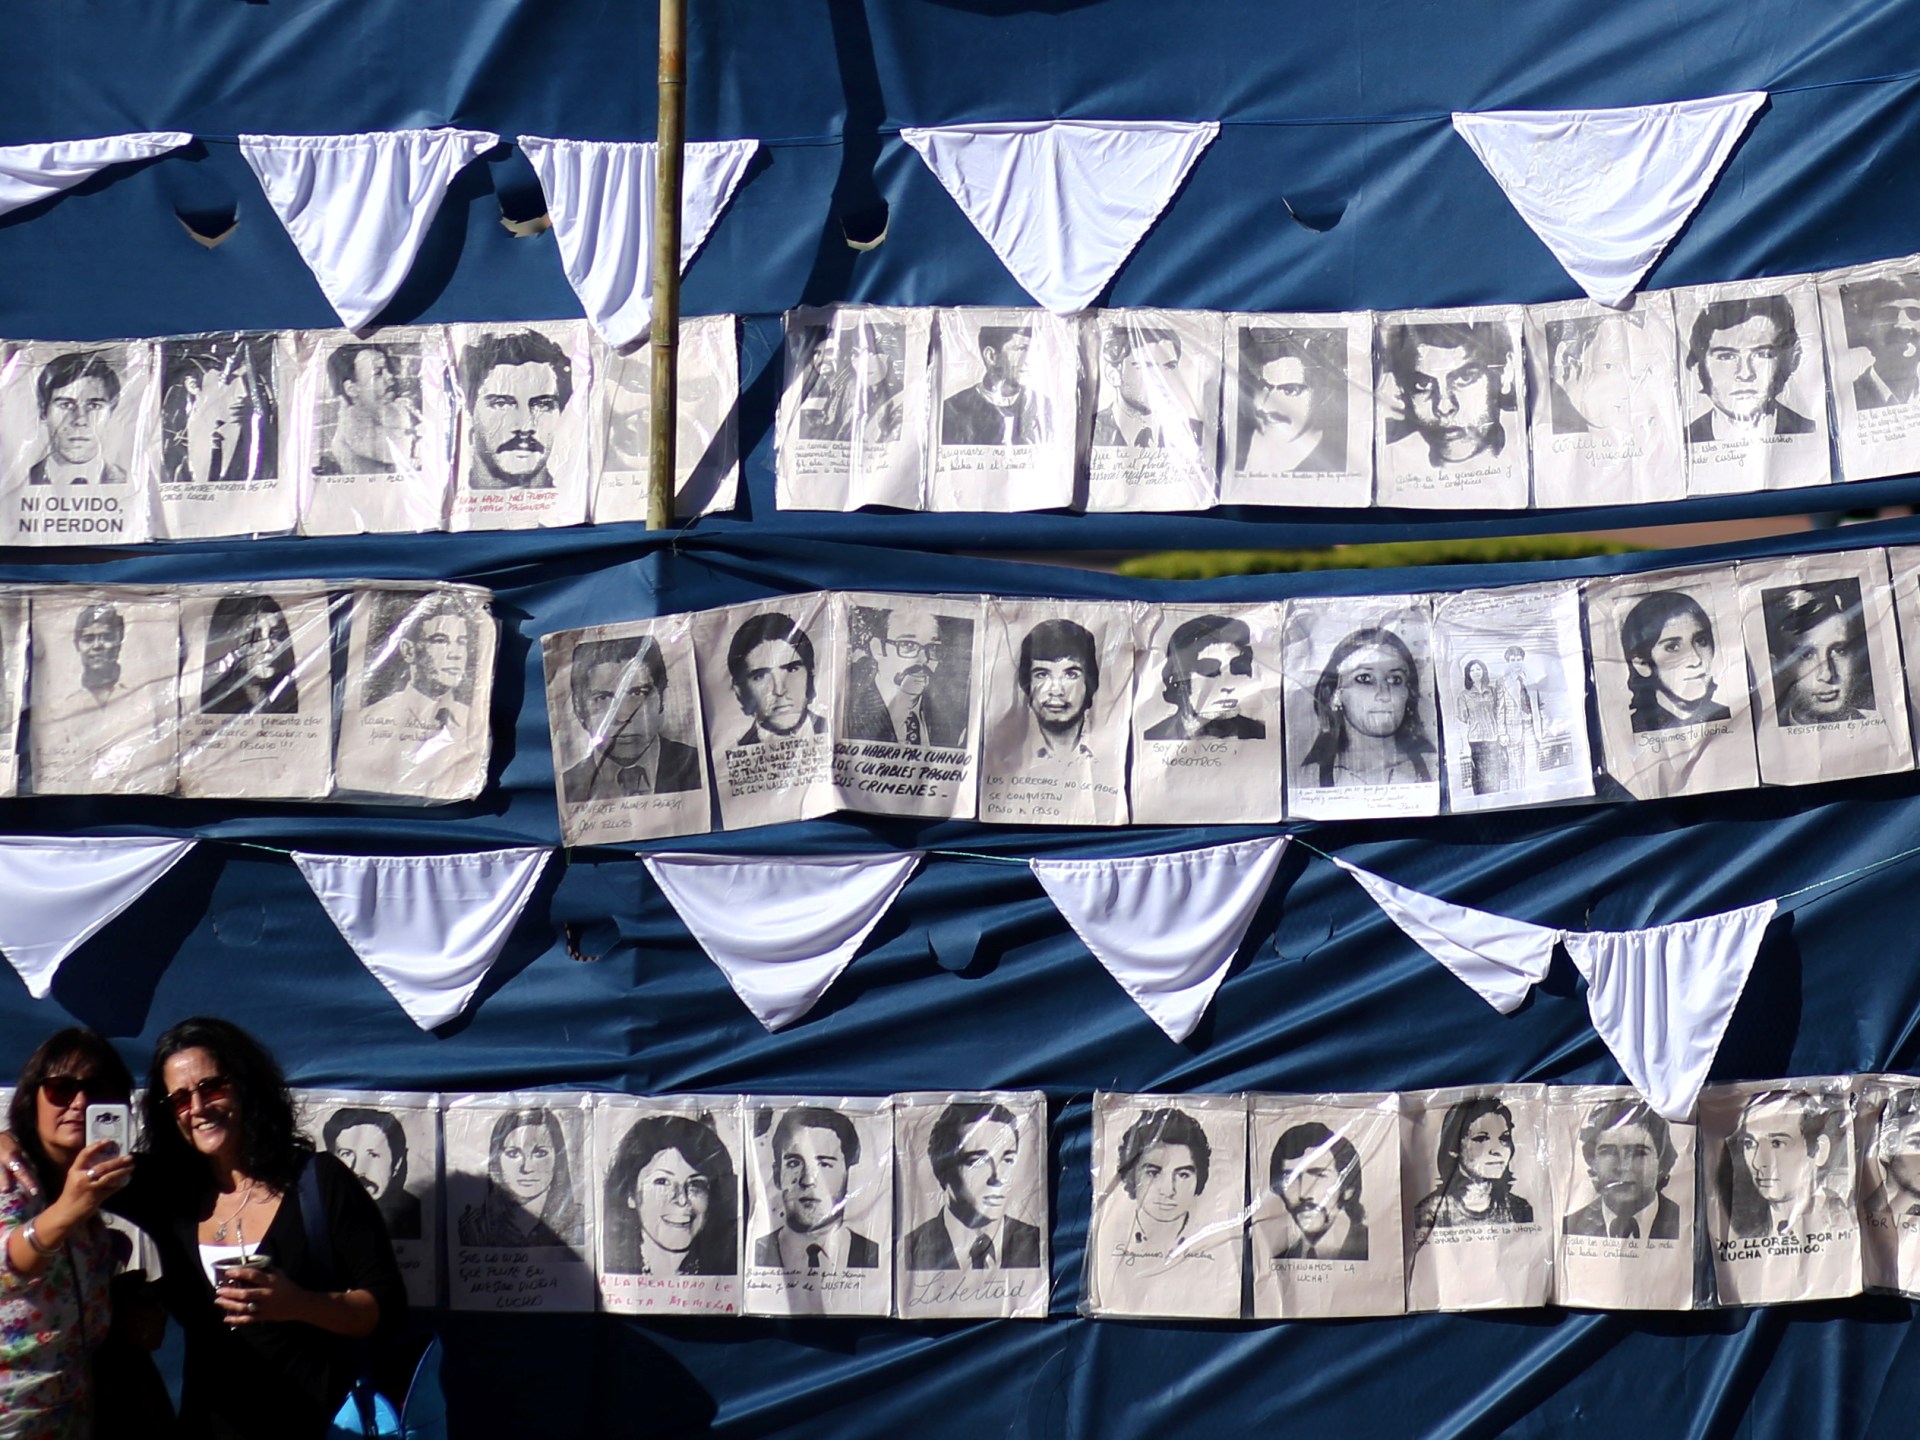 L’Argentine identifie un autre enfant enlevé pendant la dictature |  Actualités sur les droits de l’homme